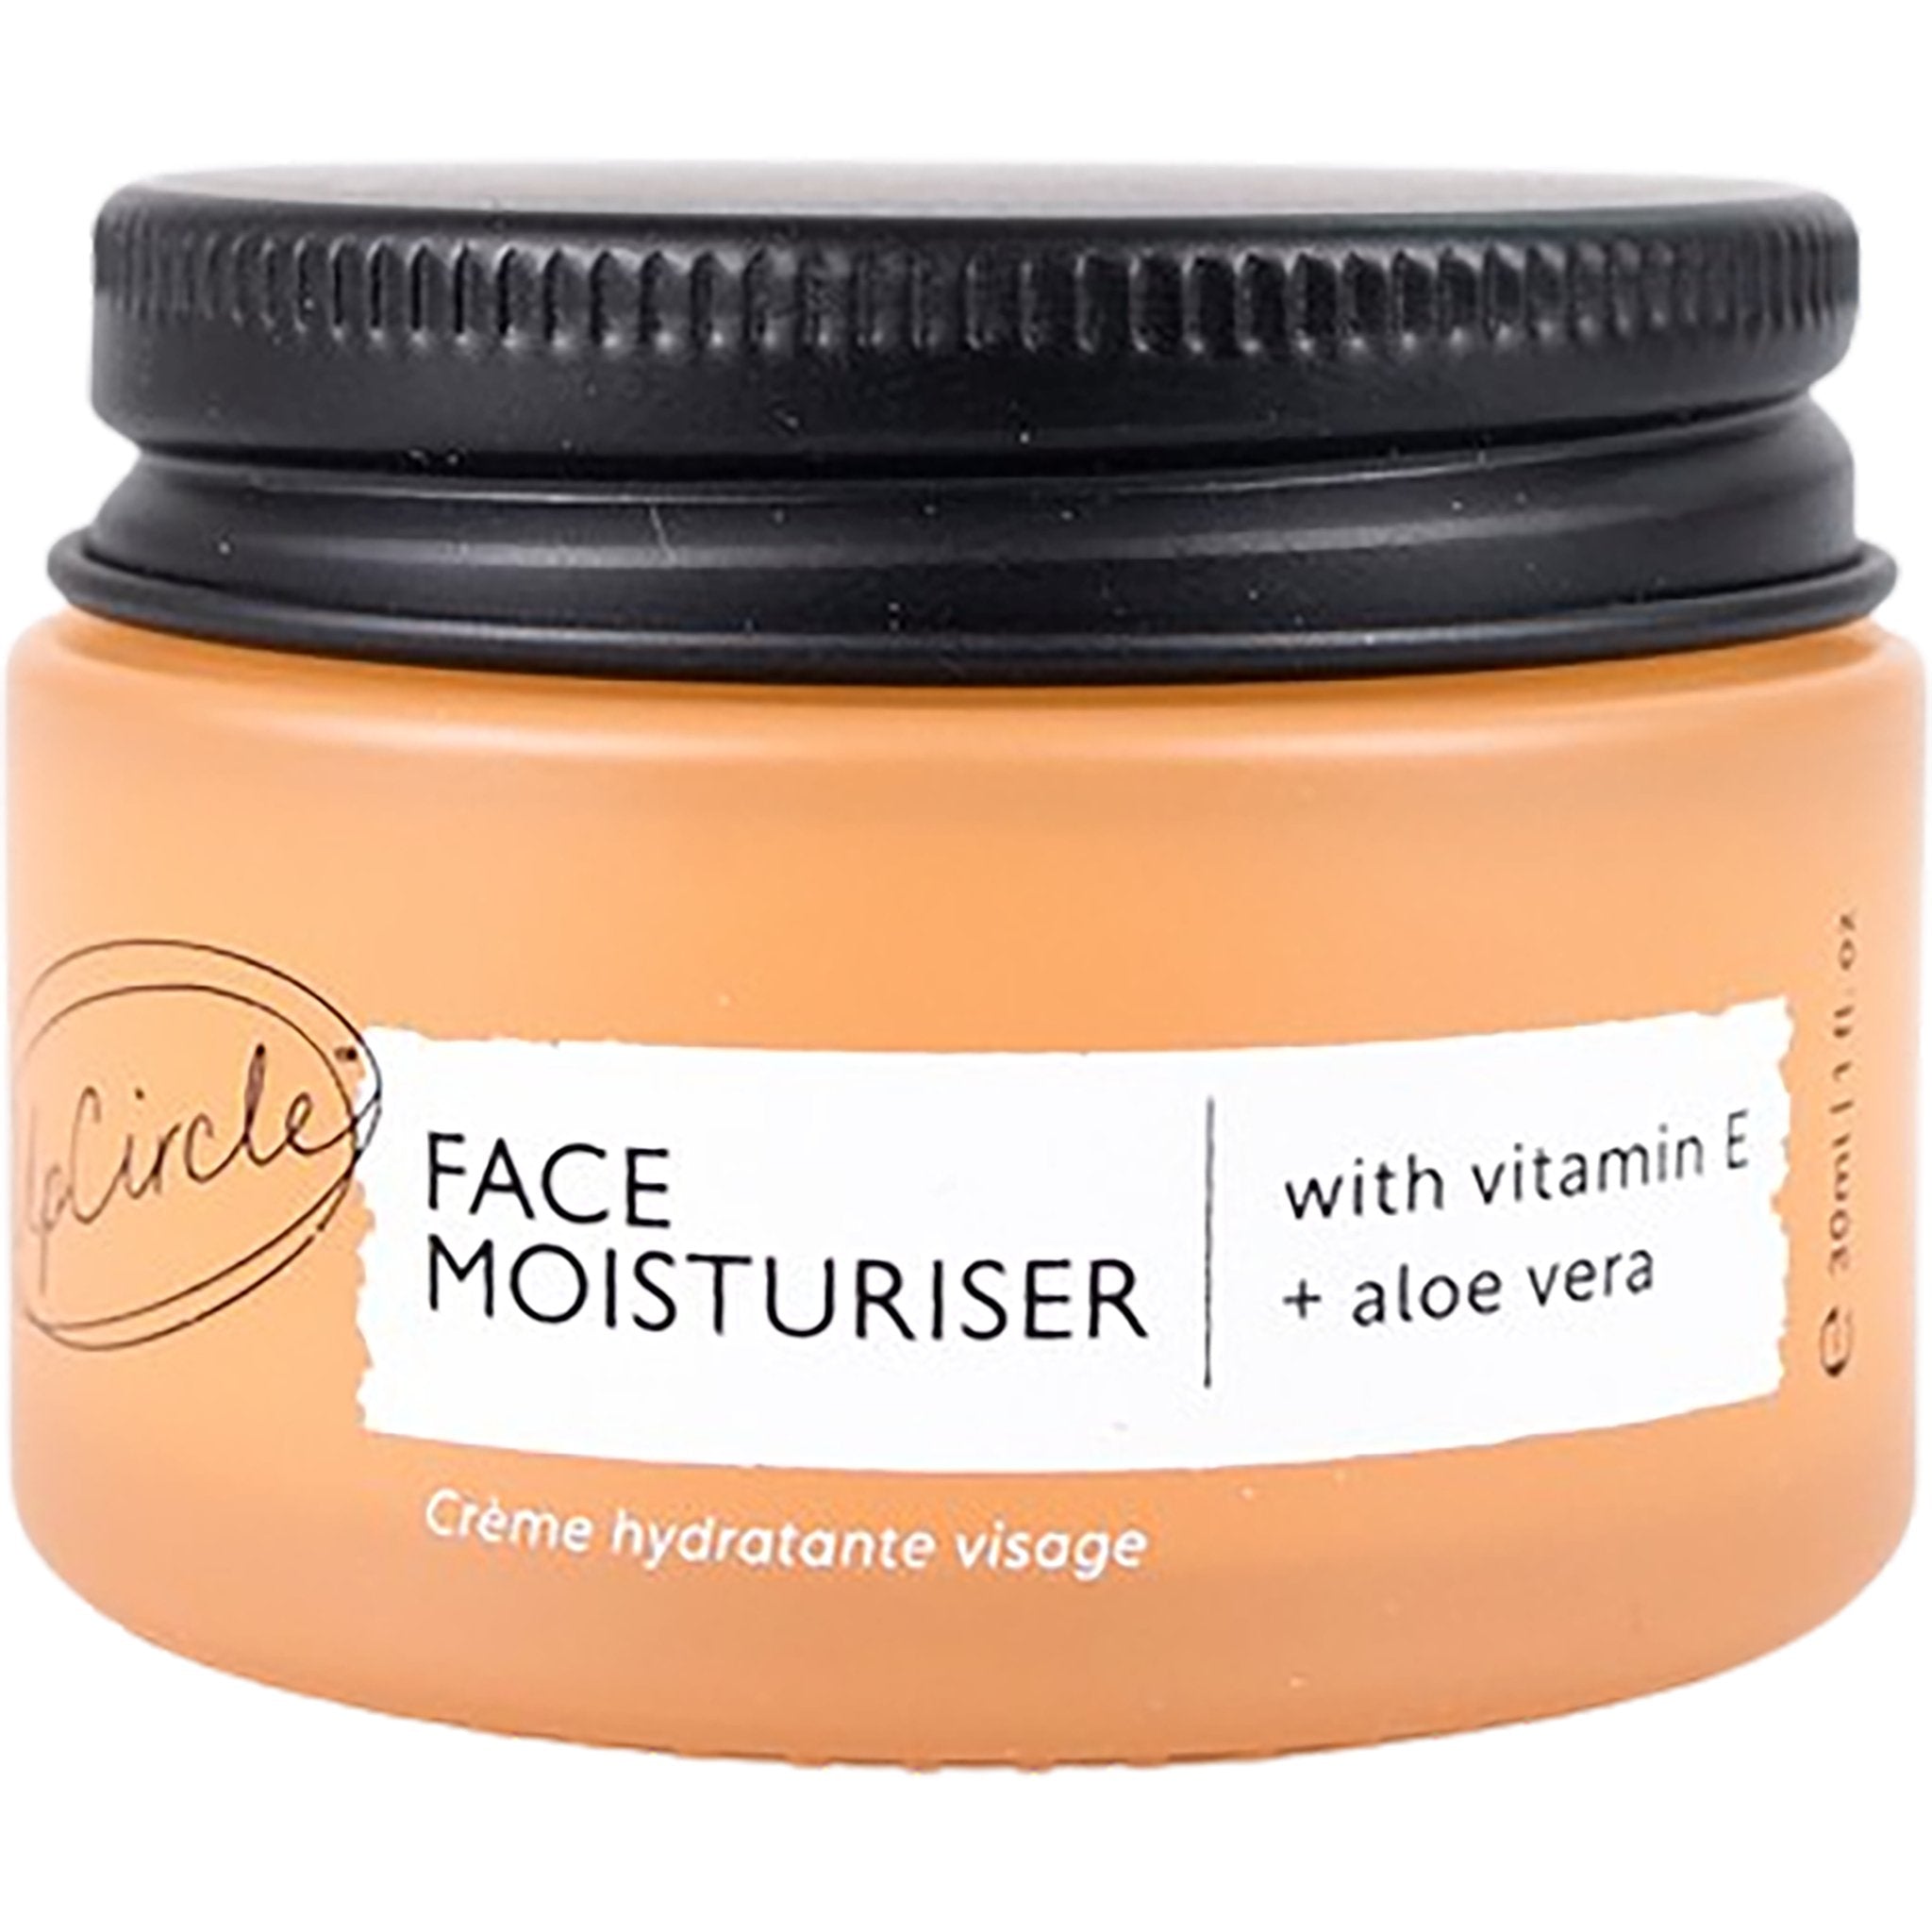 Face Moisturiser | Vitamin E - mypure.co.uk